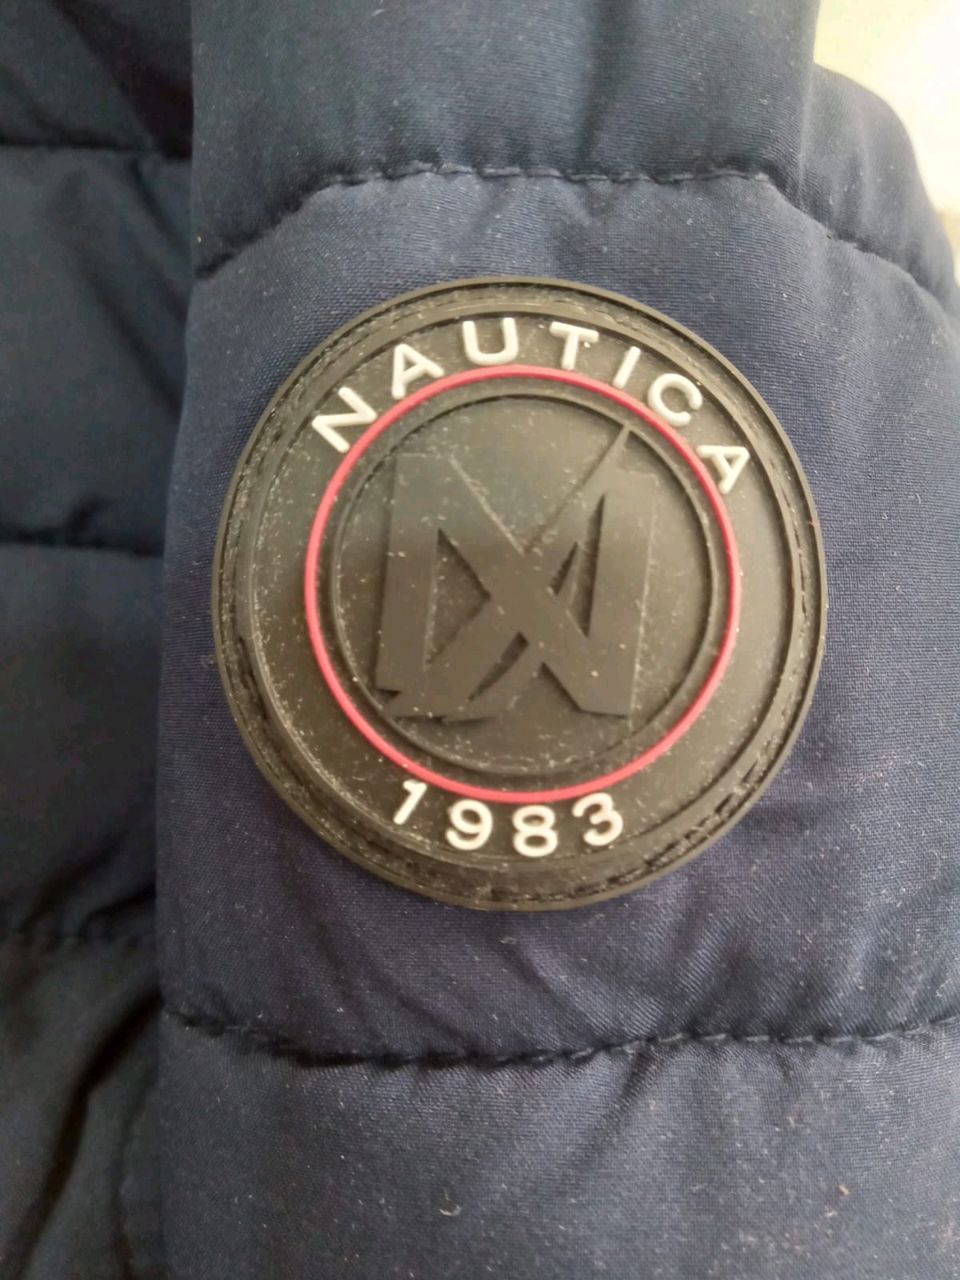 CR097 - Vintage Branded Grade A jacket - 20 piece